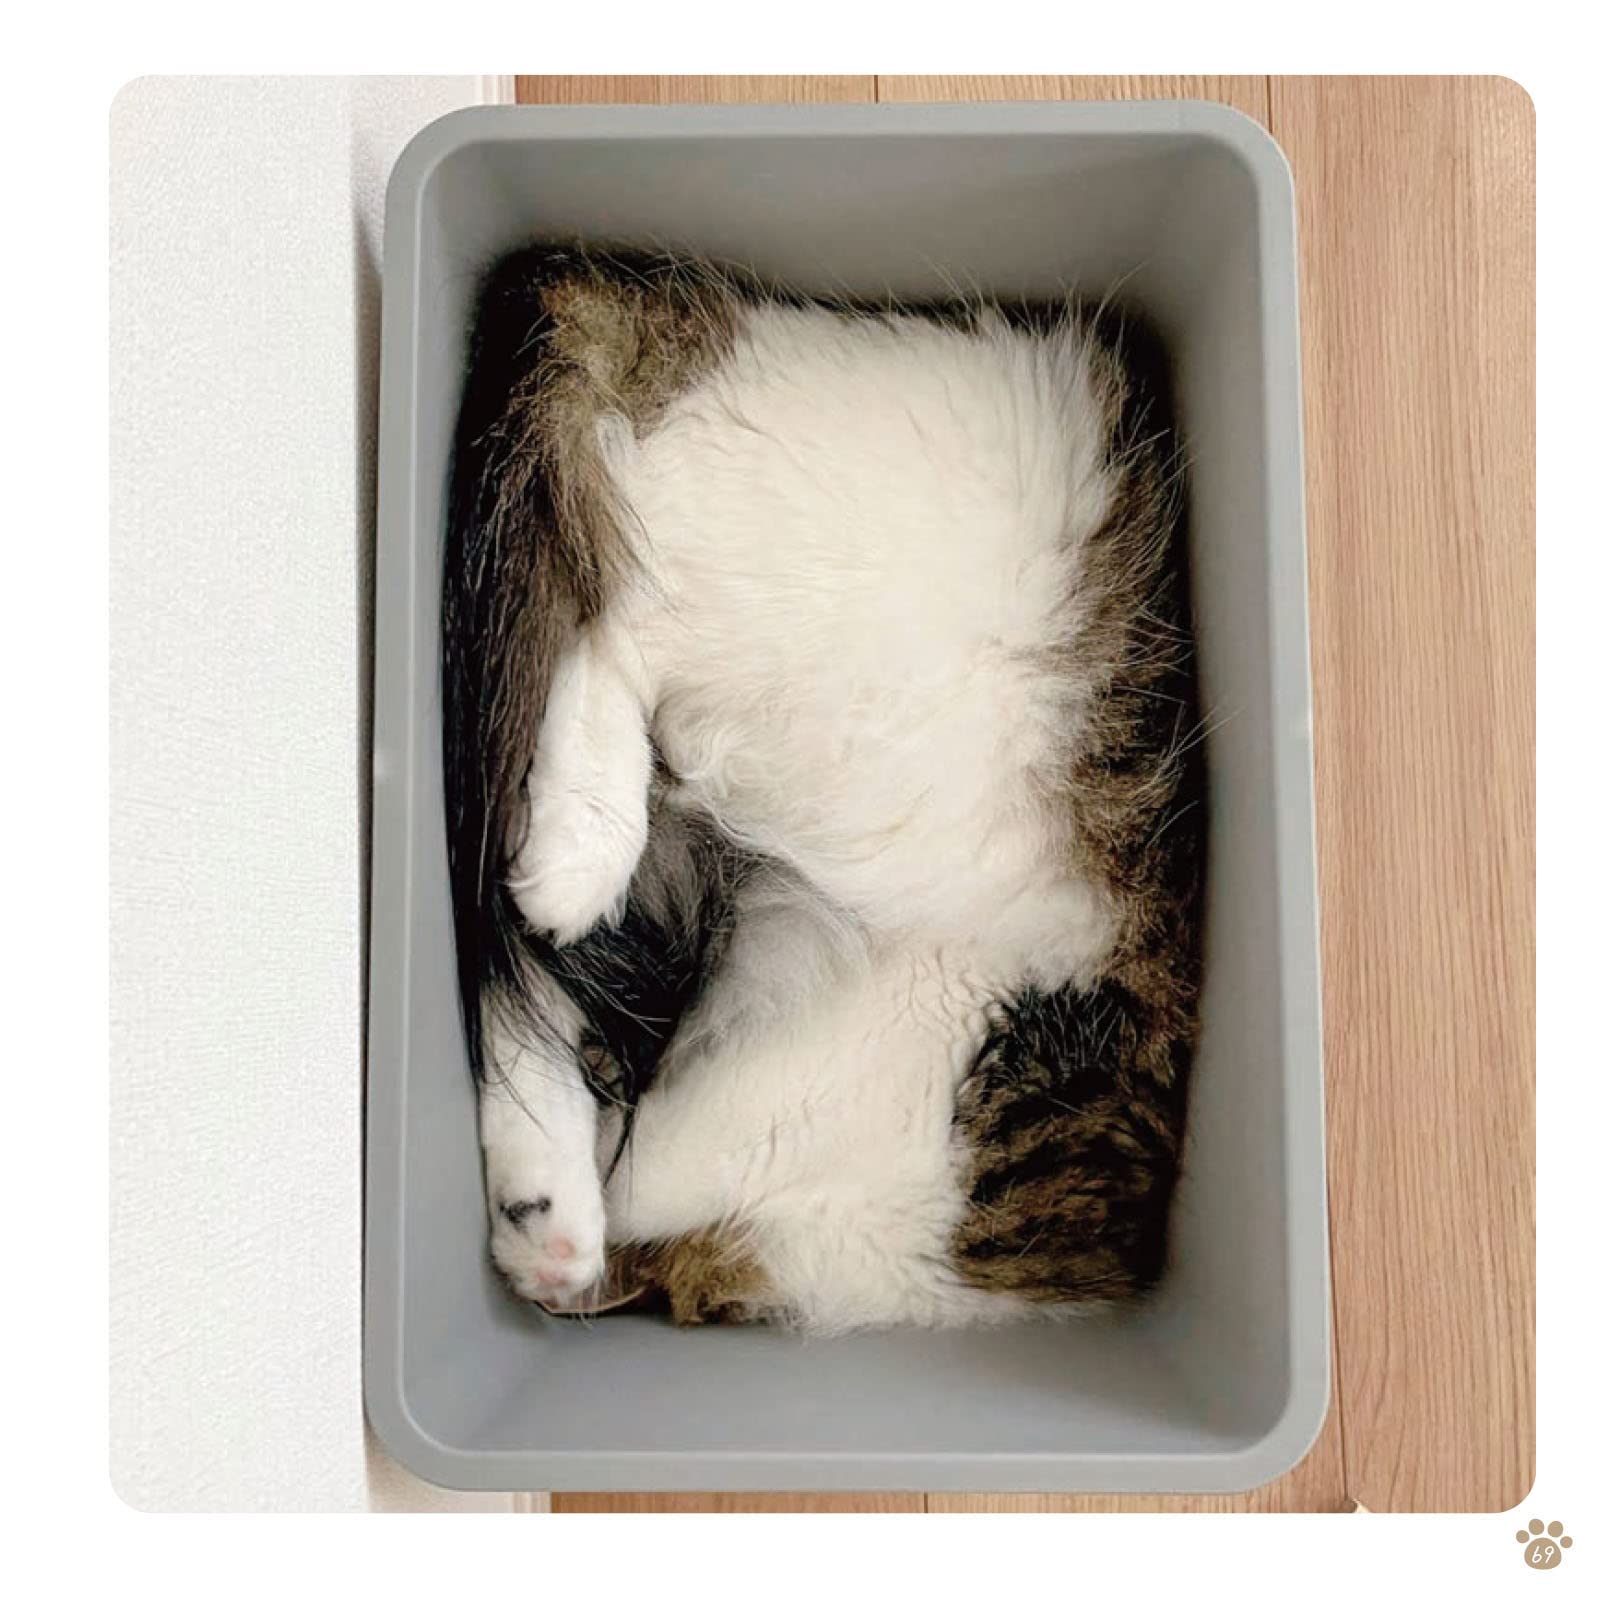 箱の中にすっぽり納まった猫の写真